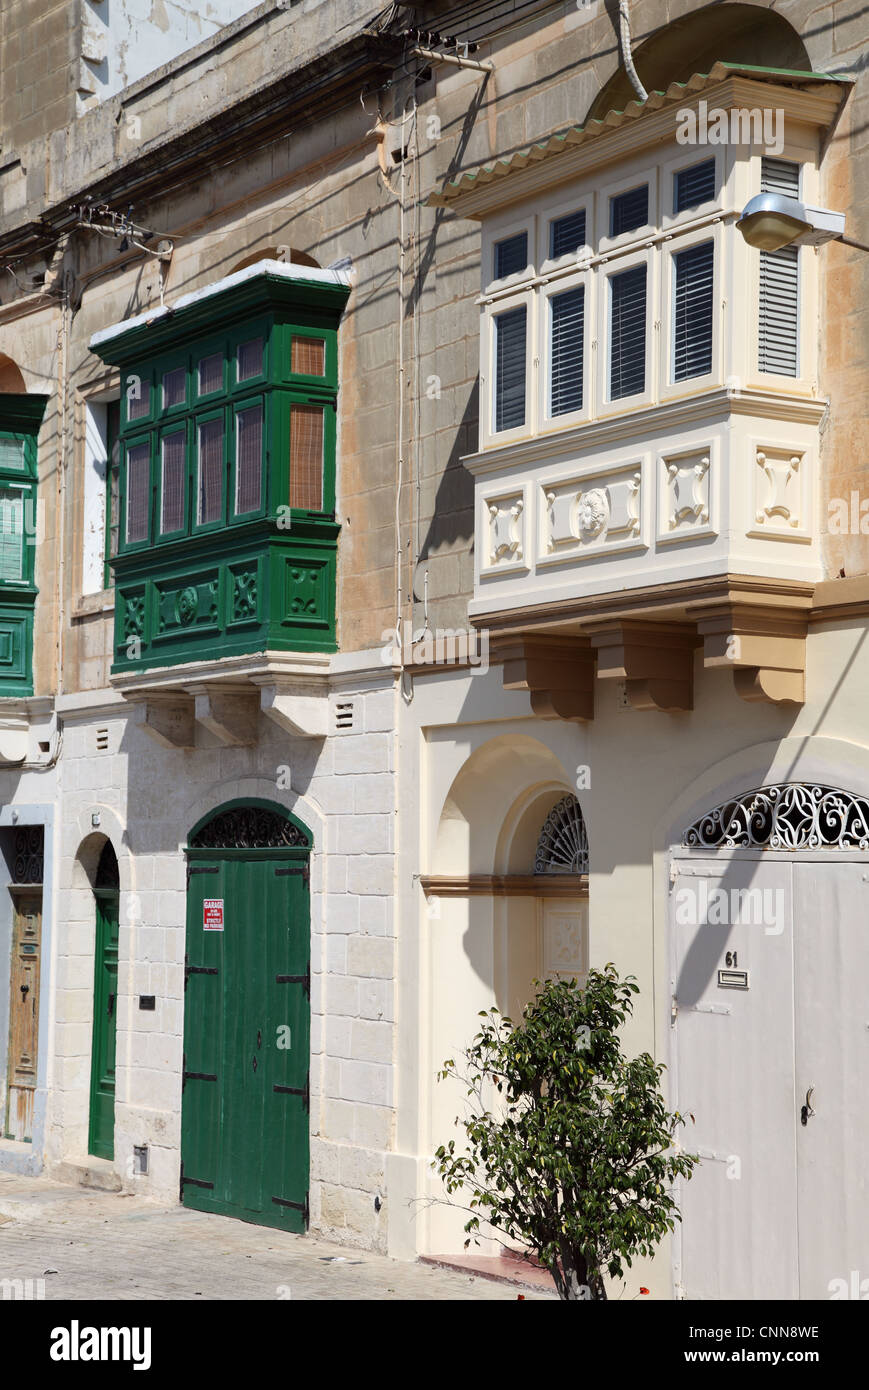 Zwei traditionellen maltesischen Häuser mit charakteristisch vorspringenden Erkern oder überdachten Balkonen, Rabat, Malta, Europa Stockfoto